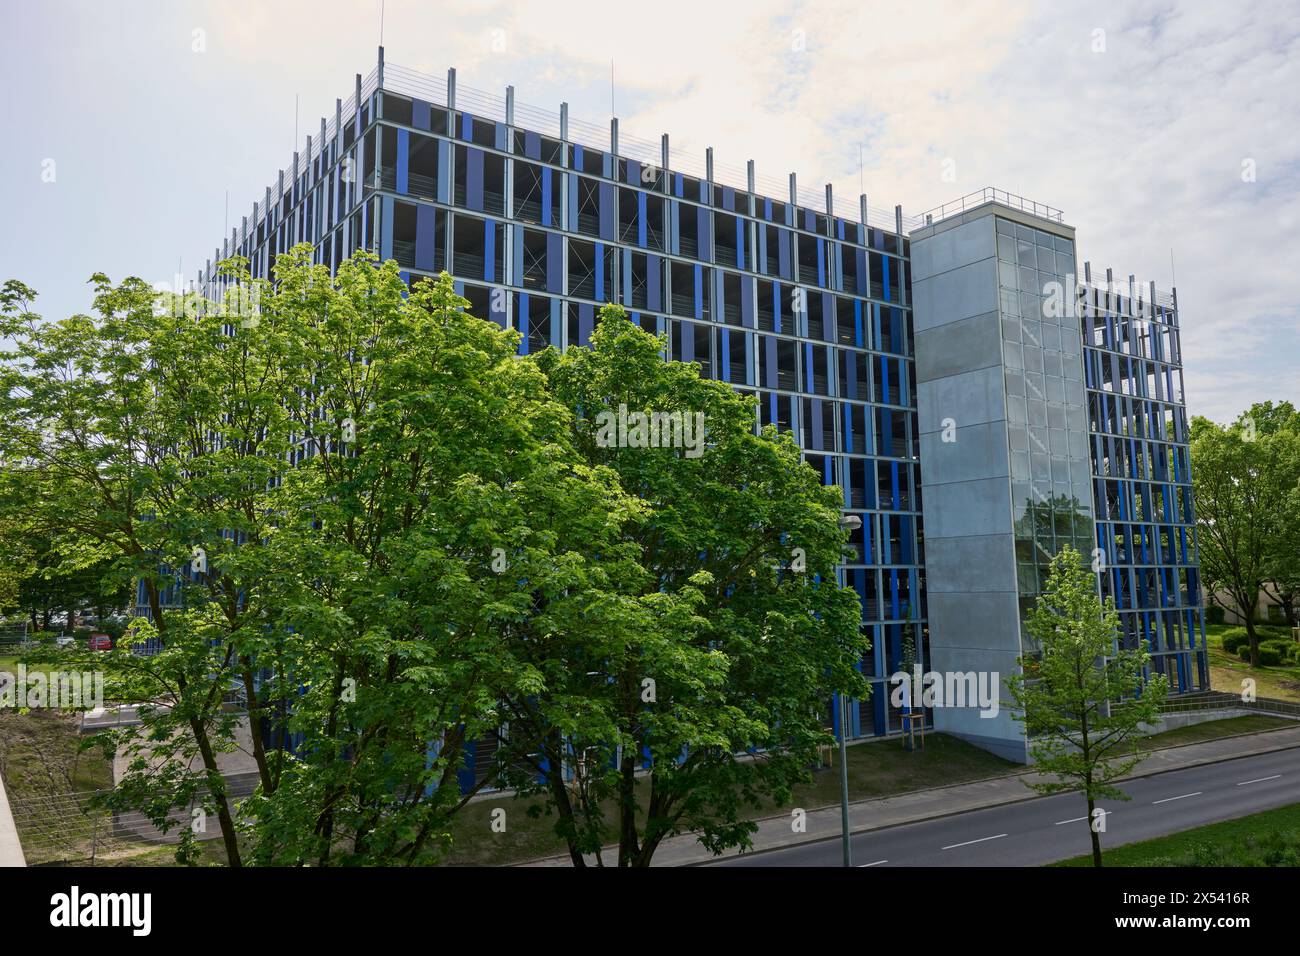 Die Essener Universität, Duisburg / Essen, Hat ein neues Parkhaus. Veröffentlichungen nur für redaktionelle Zwecke. Foto : IMAGO/FotoPrensa Banque D'Images